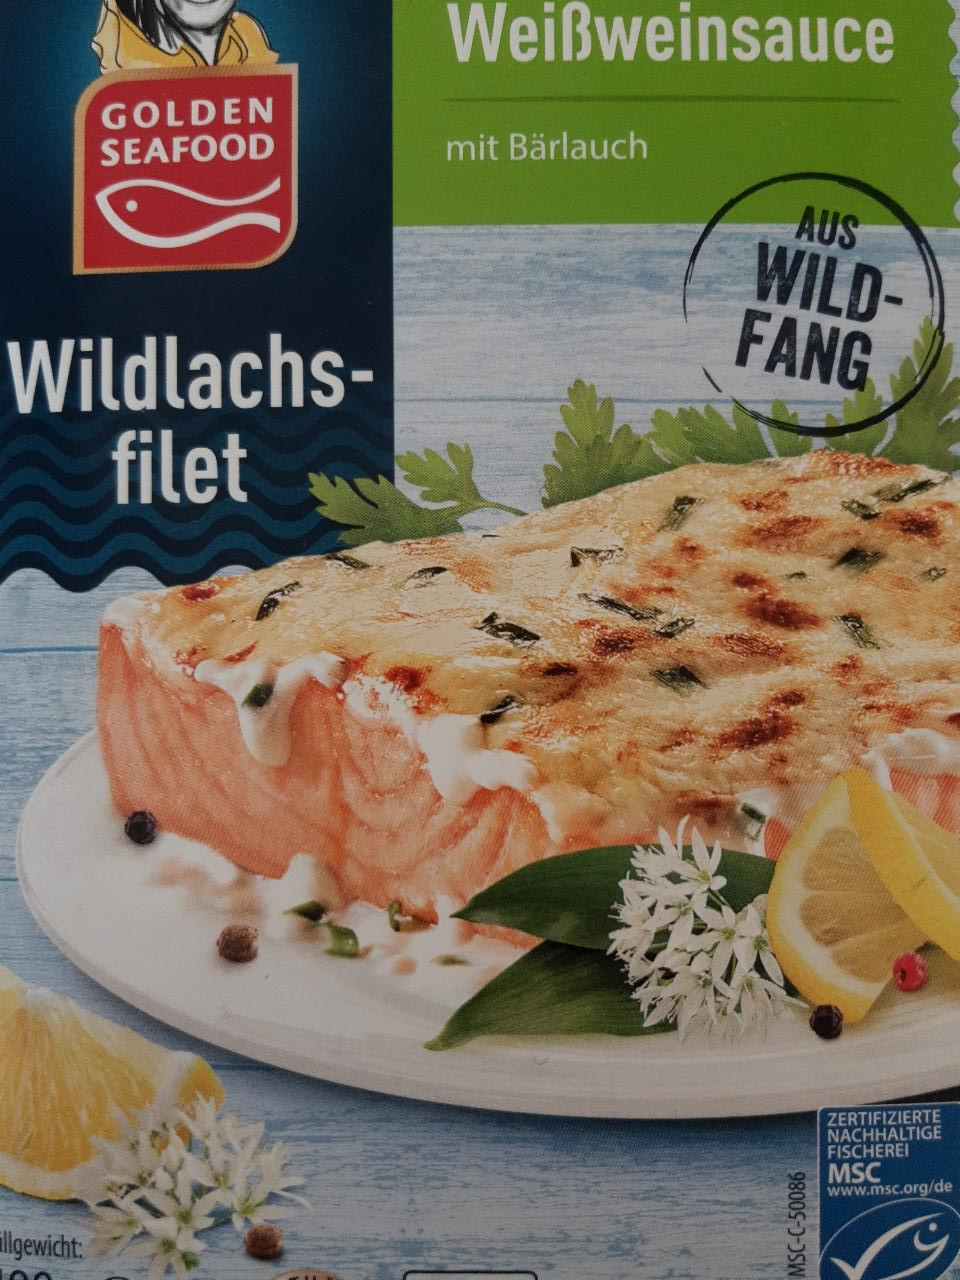 Fotografie - wildlachsfilet in Weißweinsauce Goldenseafood